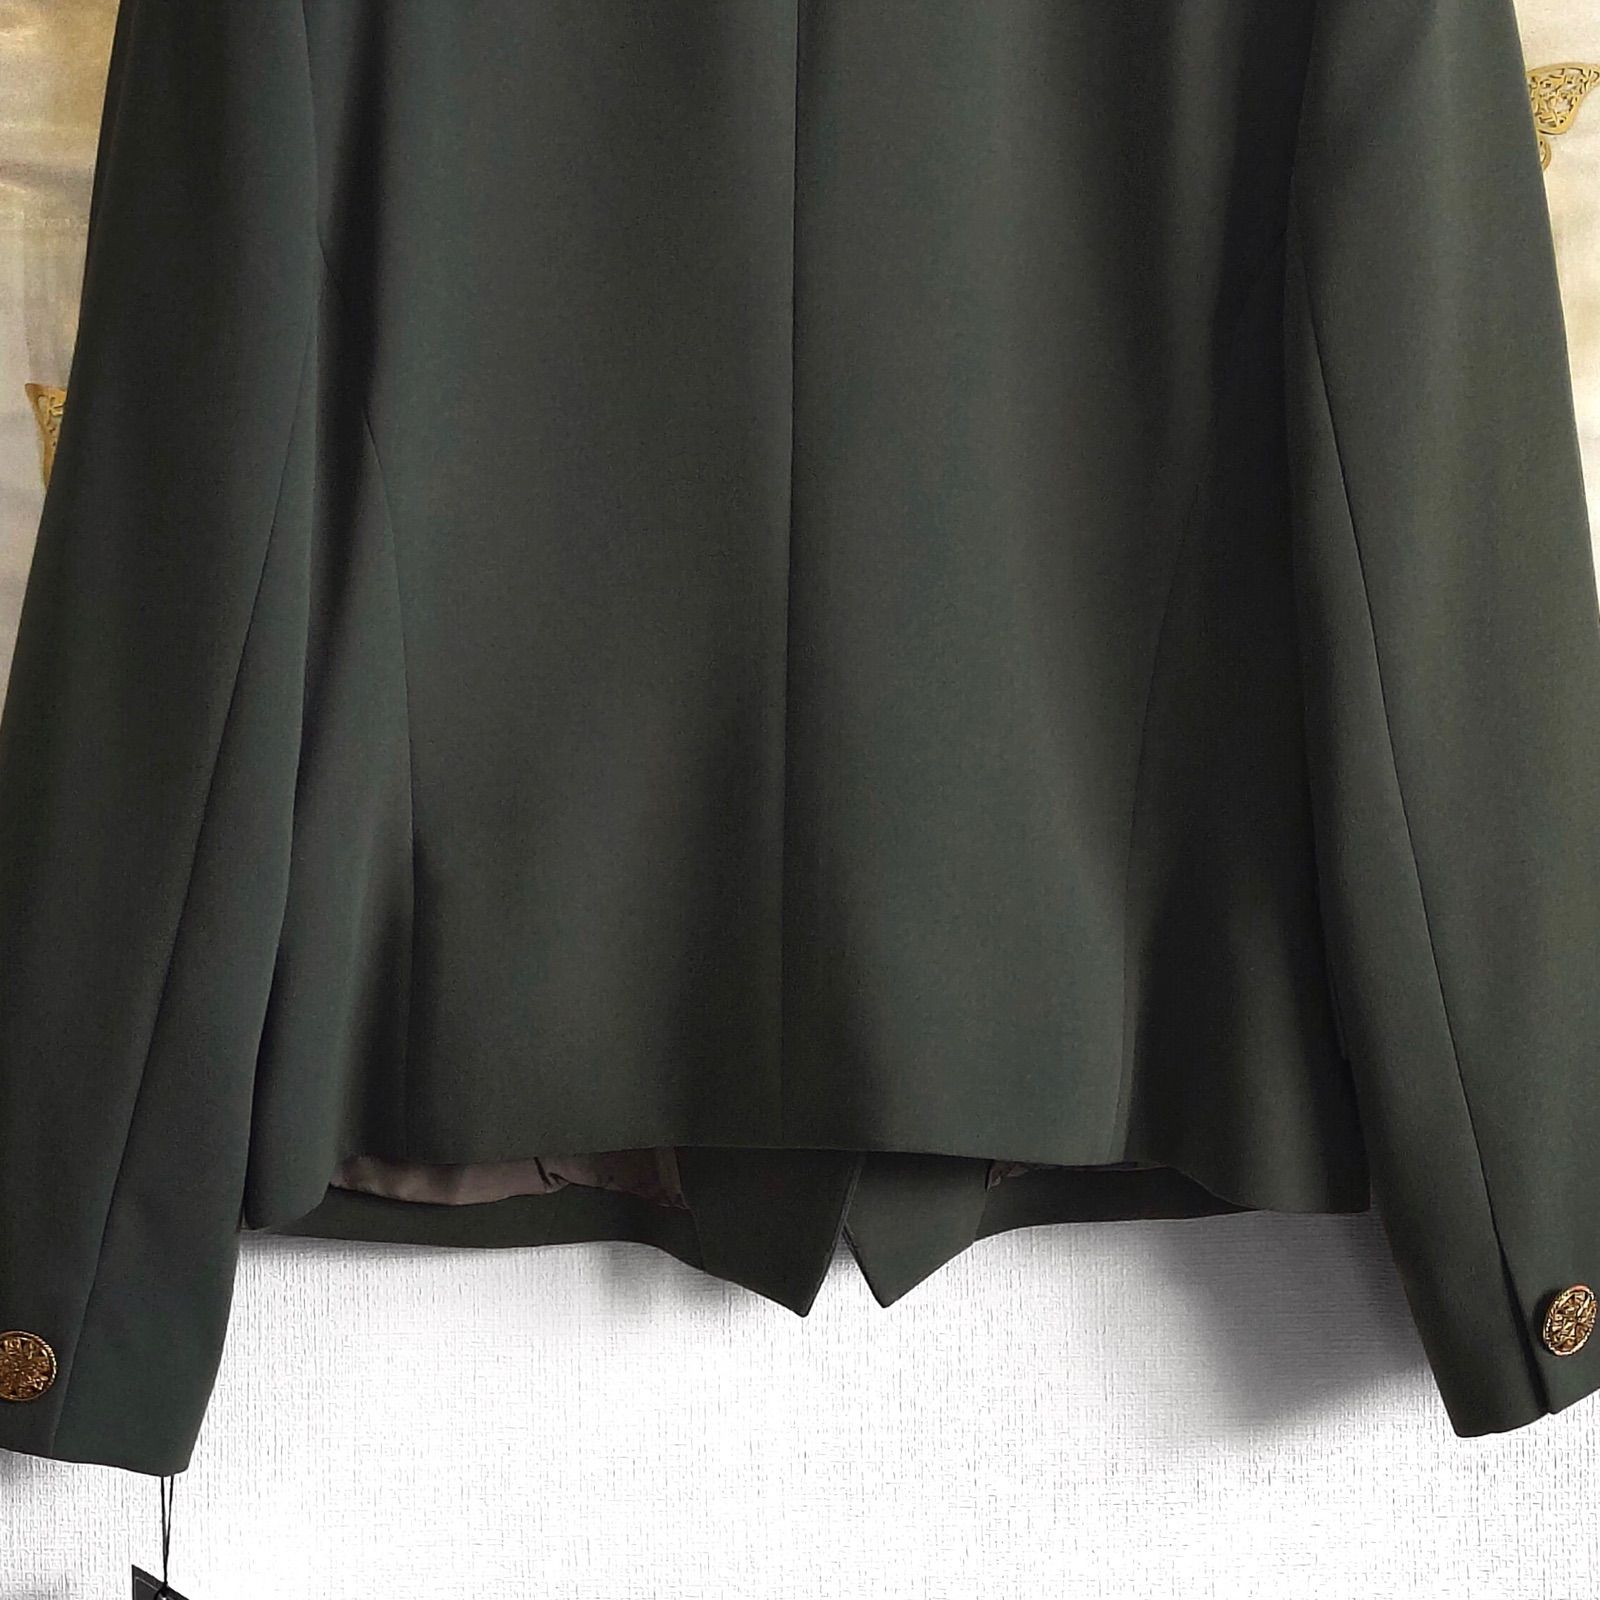 新品未使用タグ付き定価新品 ノーカラーコート ショートジャケット 金釦 長袖 カーキ グリーン 深緑色